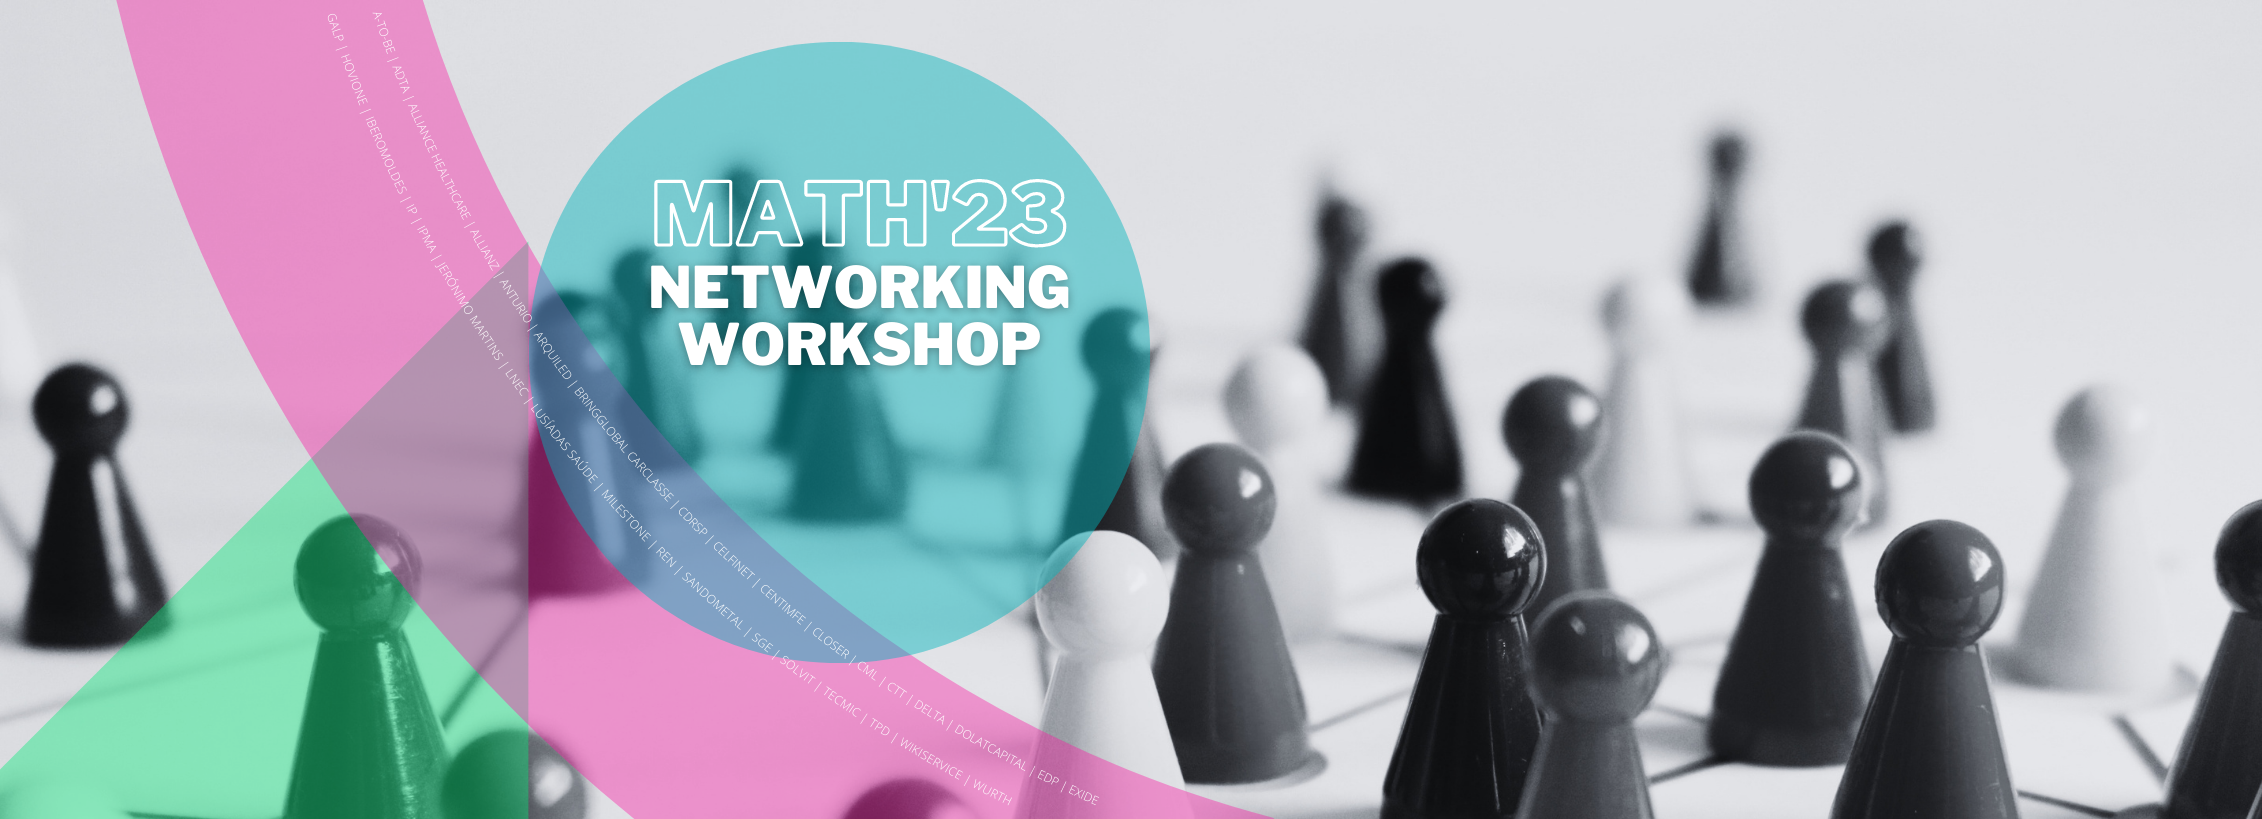 MATH23 Networking Workshop